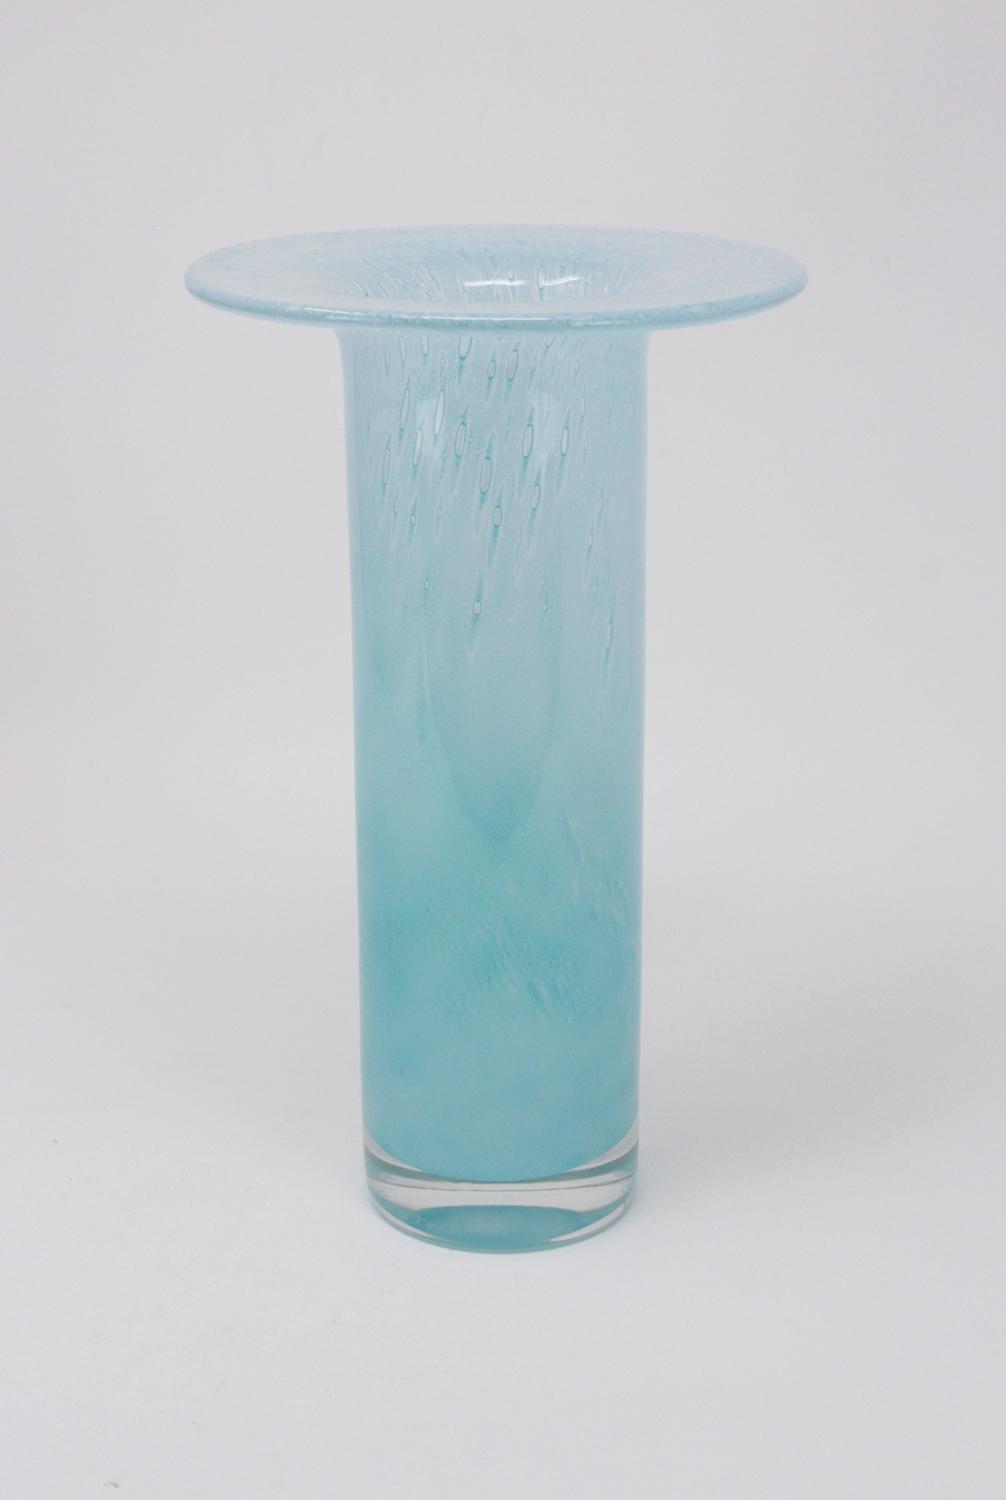 John Orwar Lake Ekenas turquoise glass vase Sweden 1950s